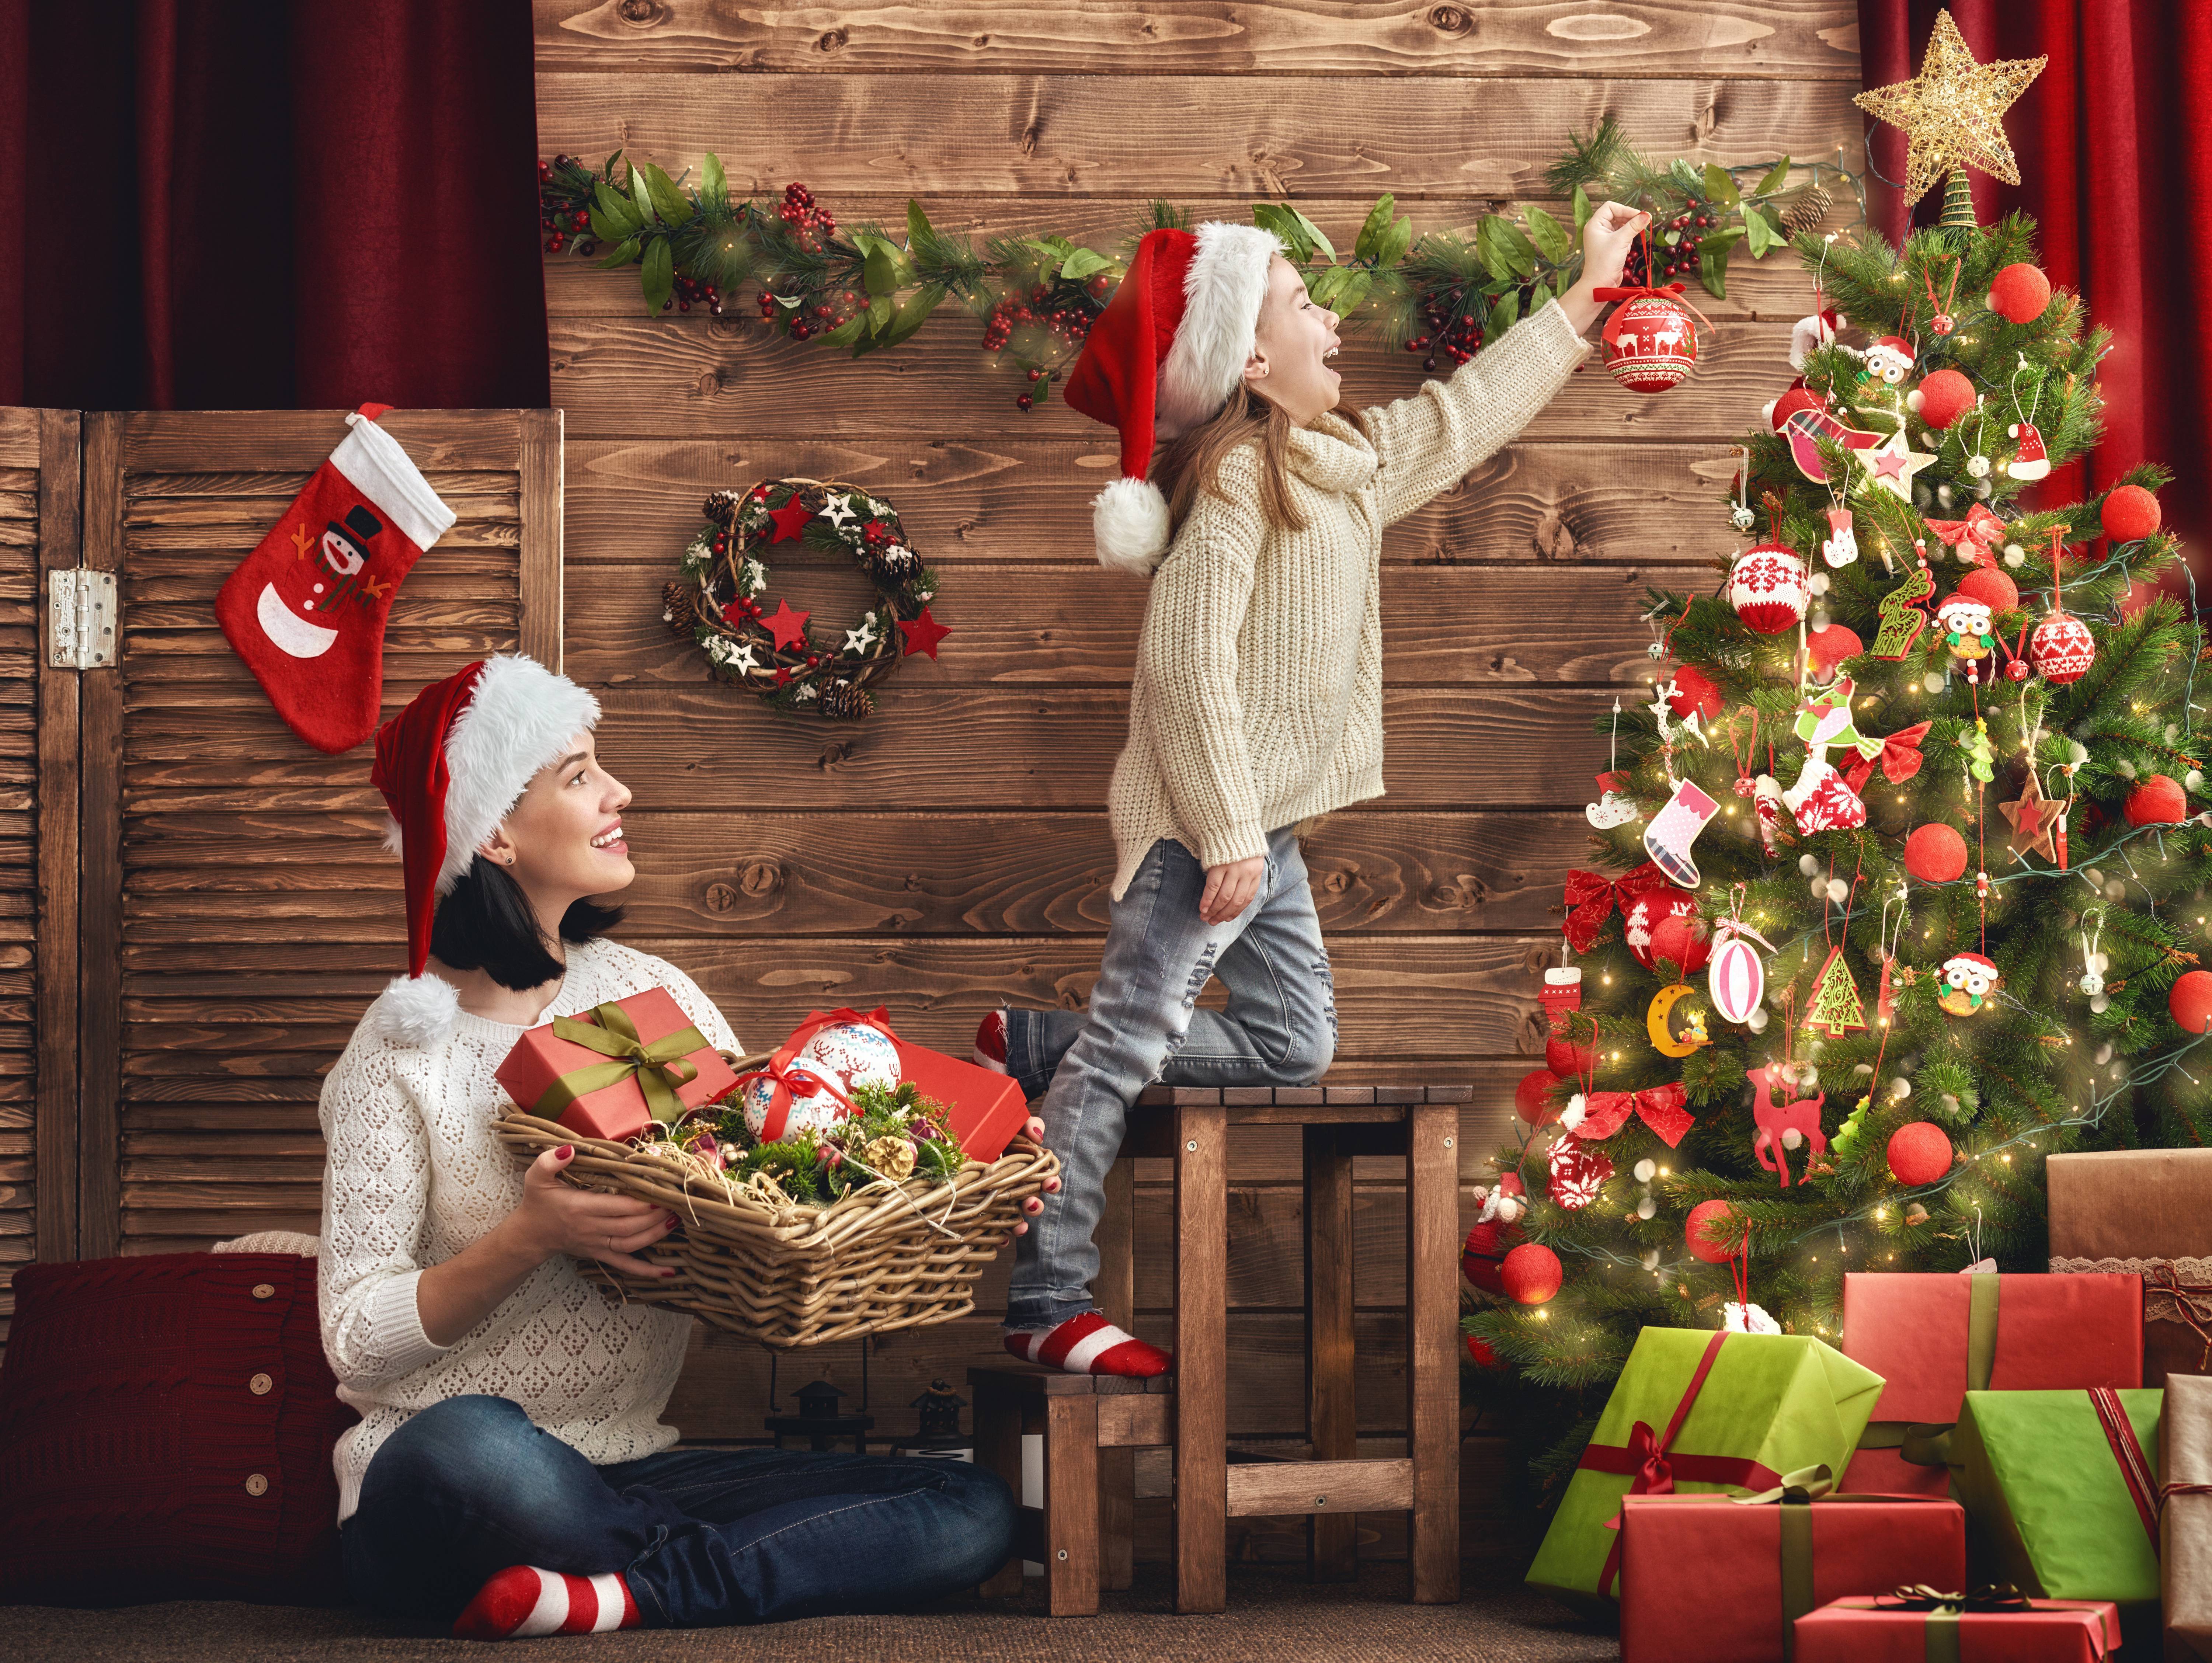 Что подарить на Рождество родителям, или Как порадовать дорогих и близких сердцу людей